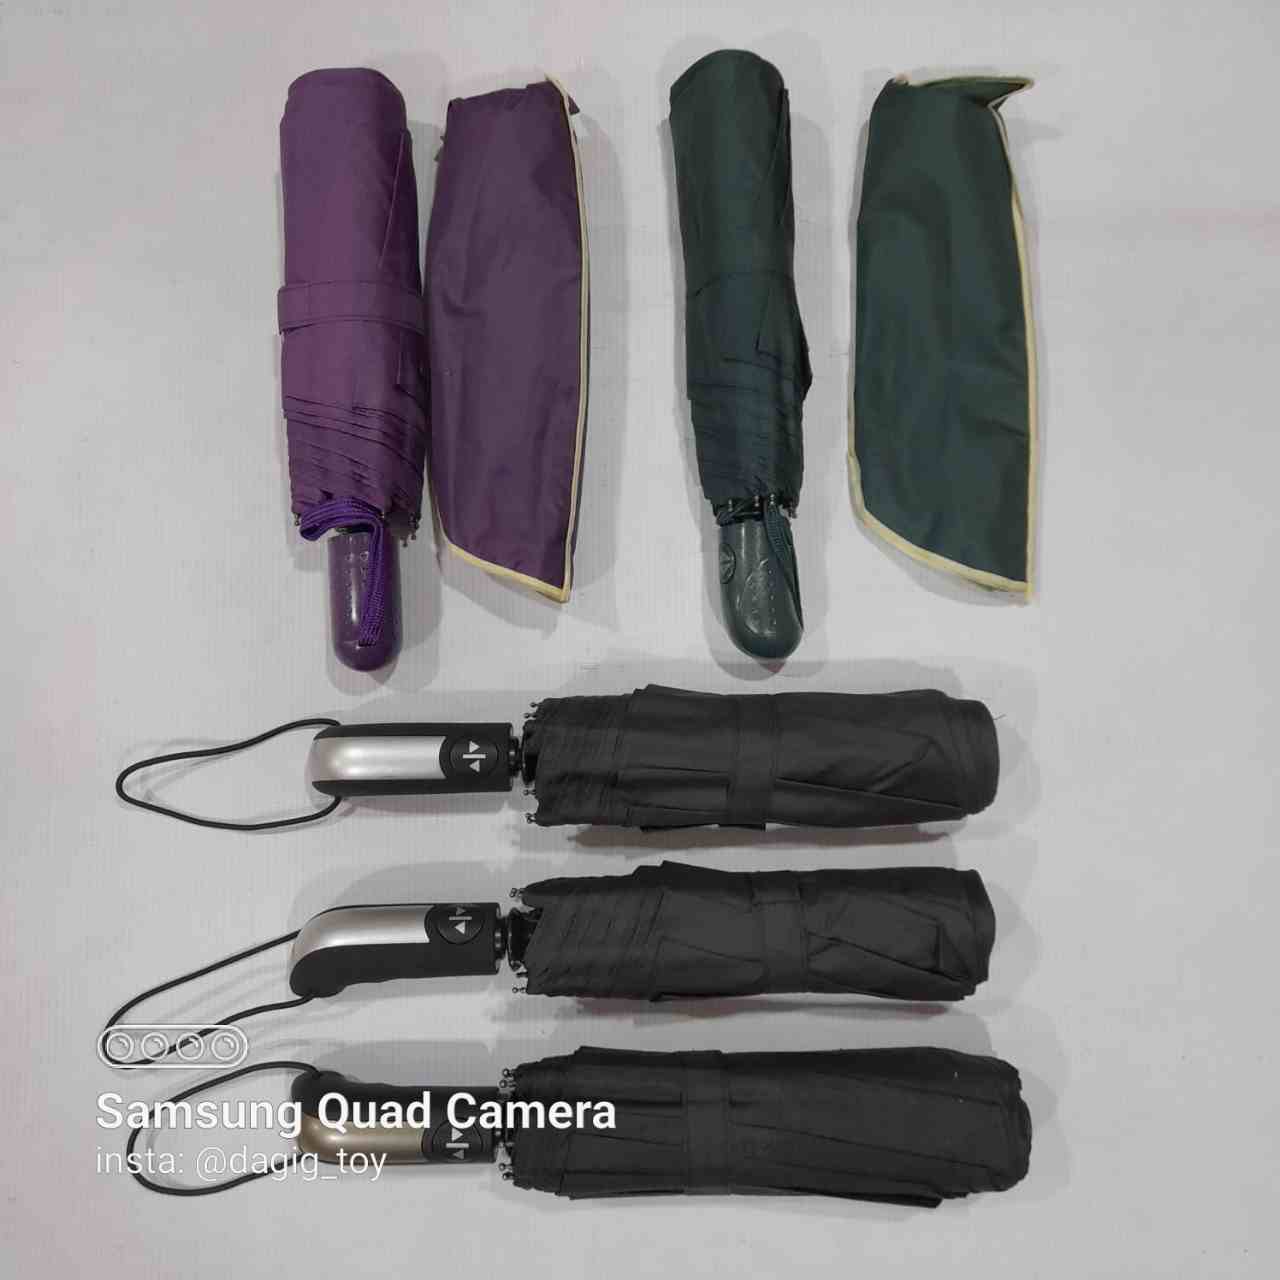     خرید چتر تاشو تمام اتوماتیک مردانه زنانه بزرگ به قیمت بسیار مناسب - ضد آب و ضد باد خارجی